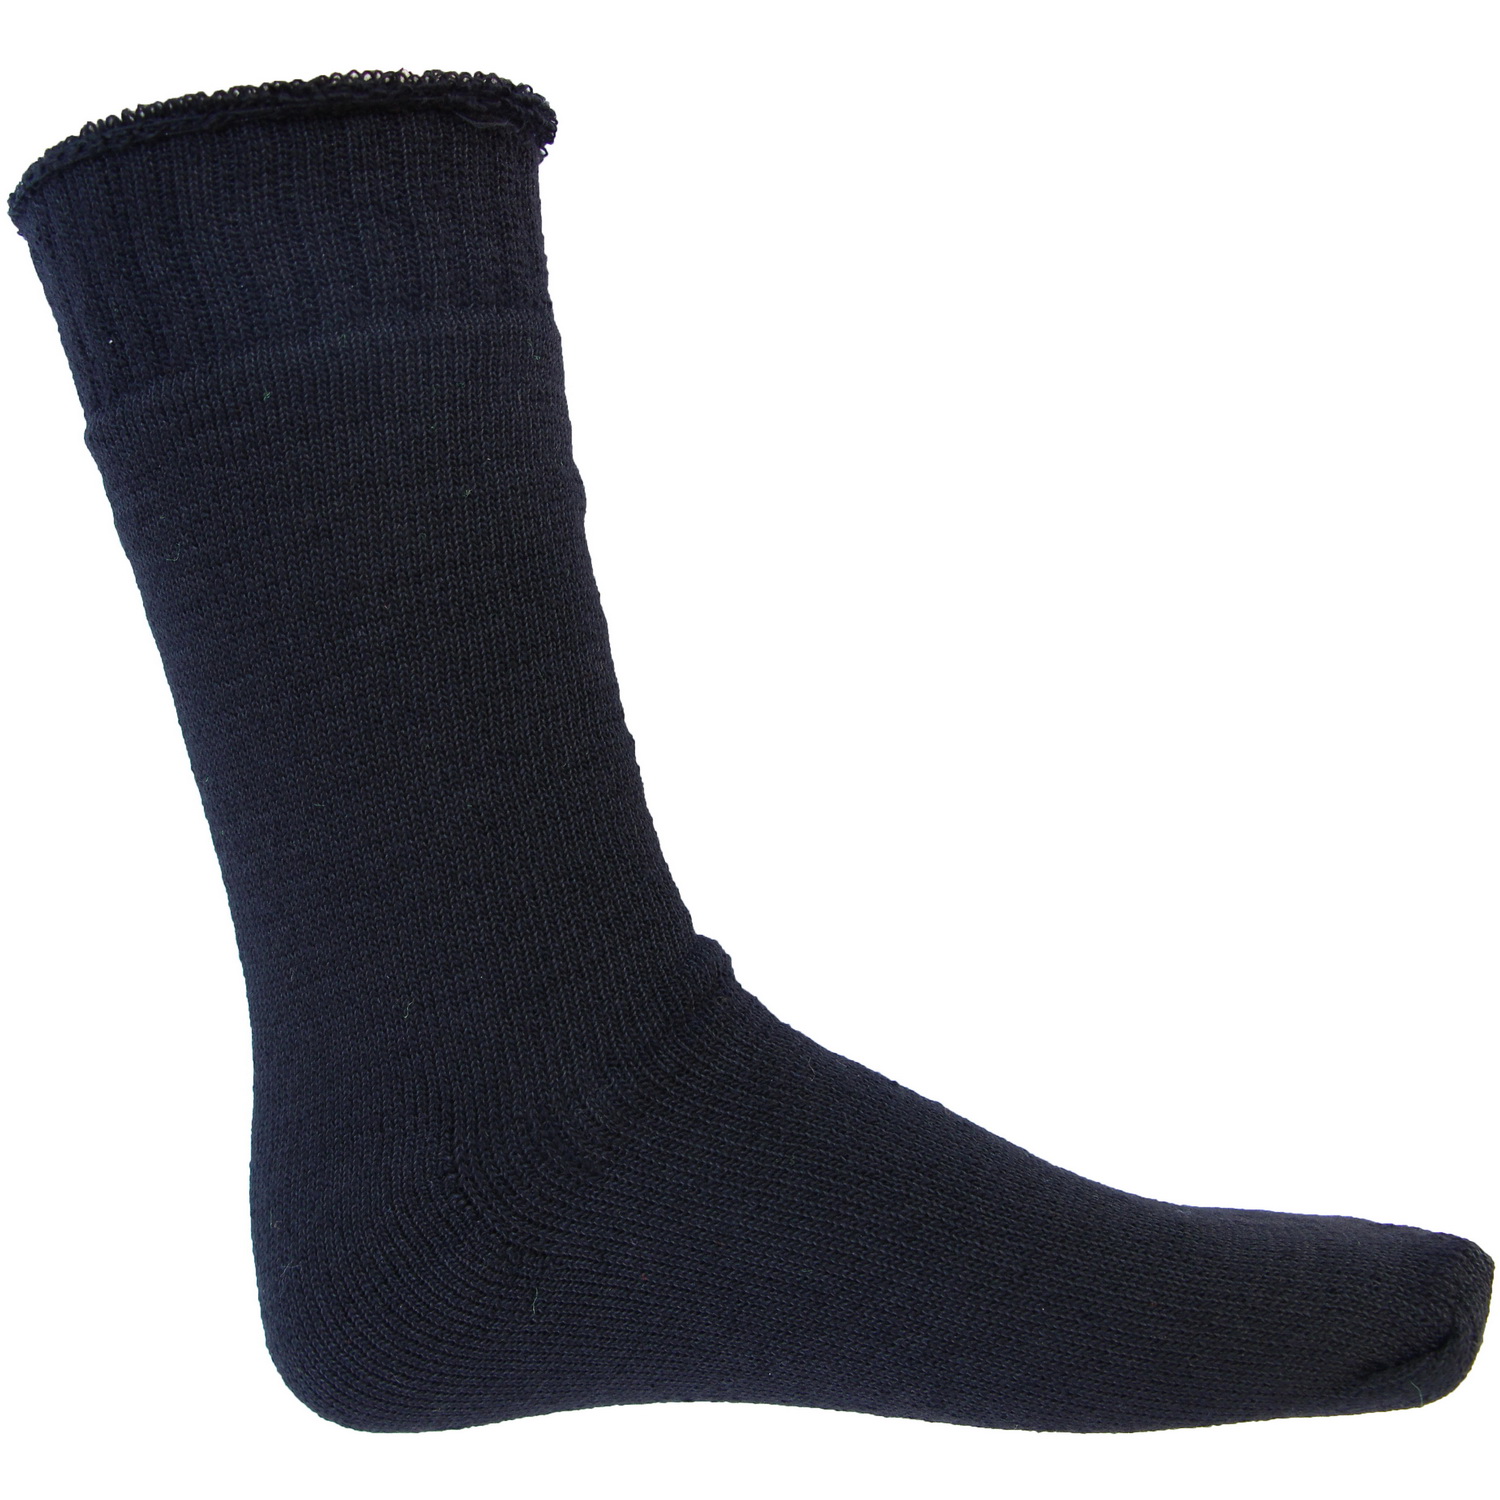 Woolen Socks - 3 Pair Pack